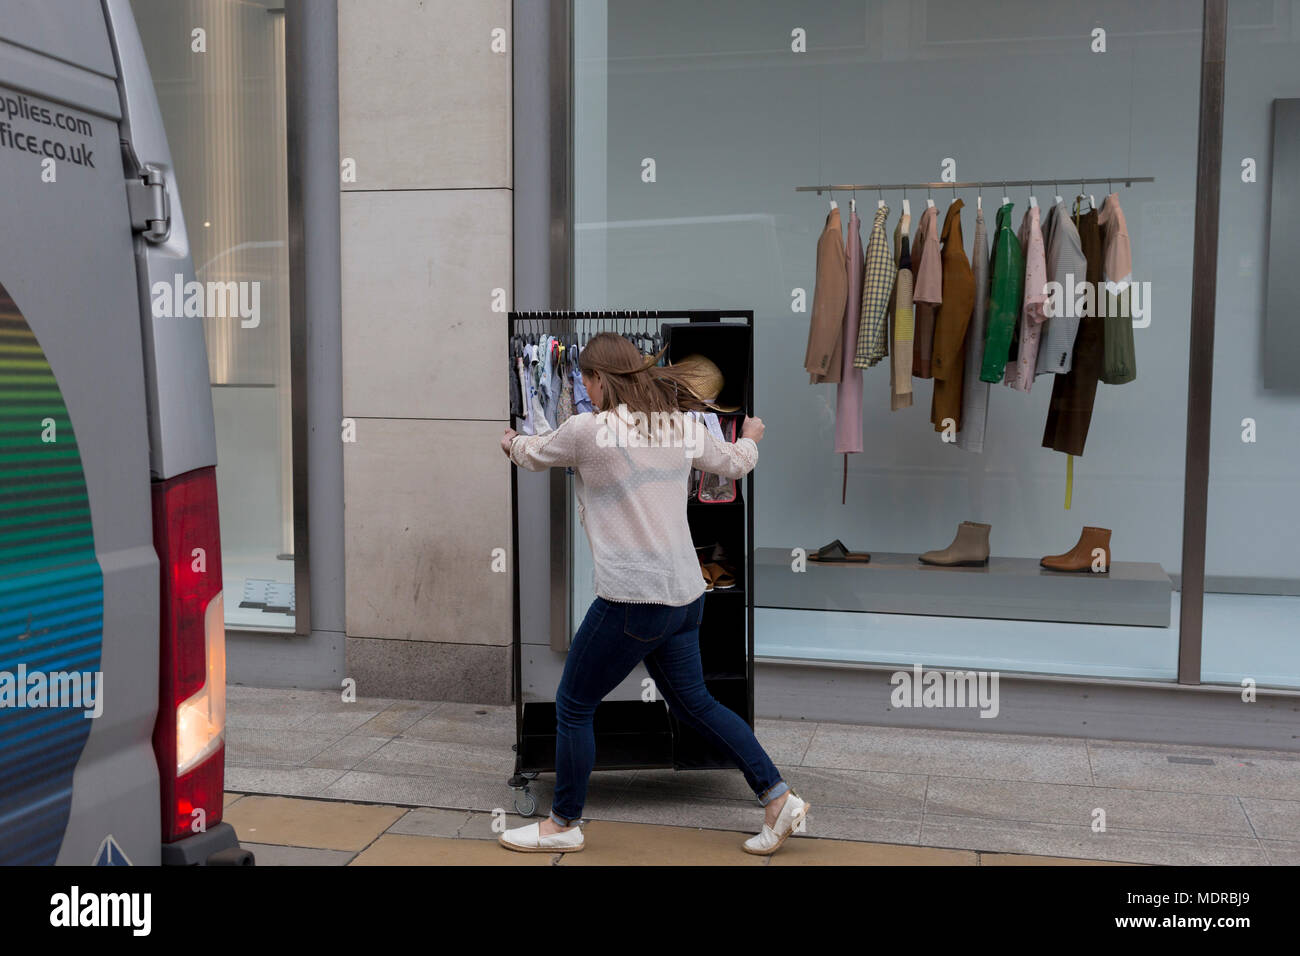 Ein Mitarbeiter vom Einzelhändler Zara, schiebt ein Rack mit Kleidung Kinder  auf New Bond Street, am 16. April 2018 in London, England Stockfotografie -  Alamy